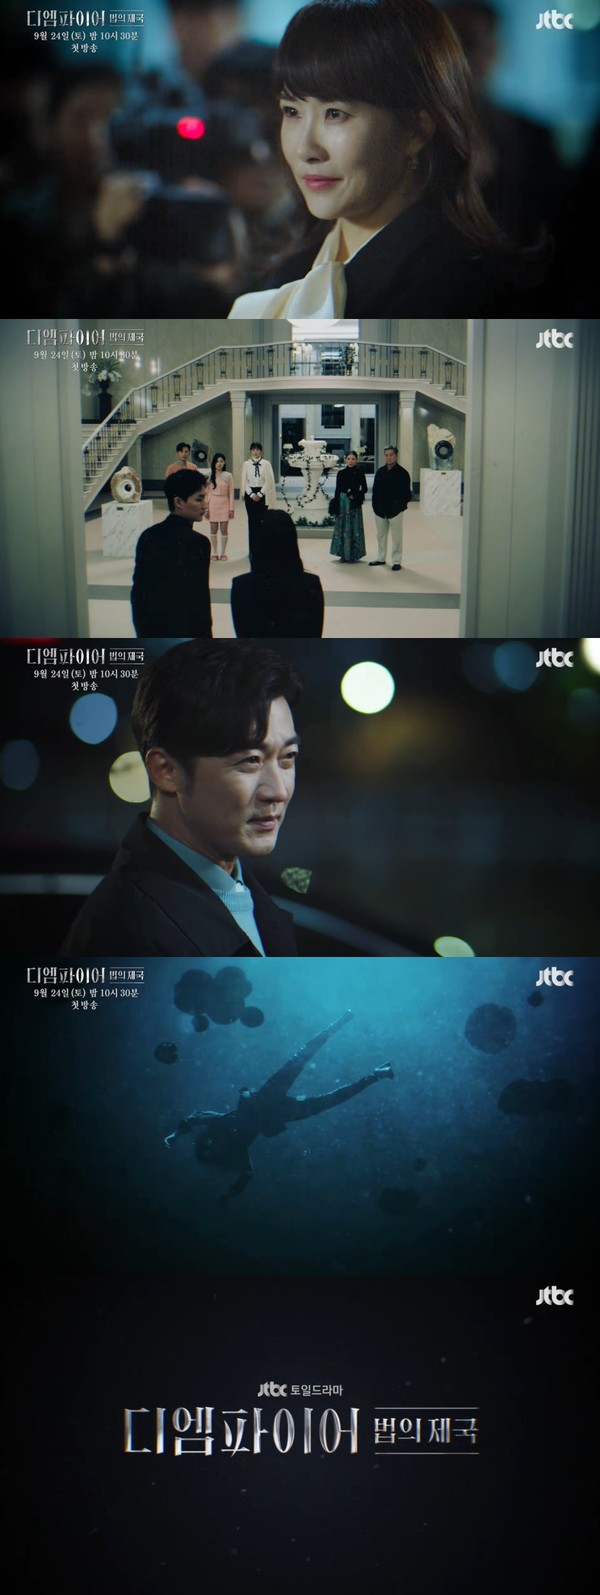 [사진 출처: JTBC 새 토일드라마 '디 엠파이어: 법의 제국' 1차 티저 영상 캡처]